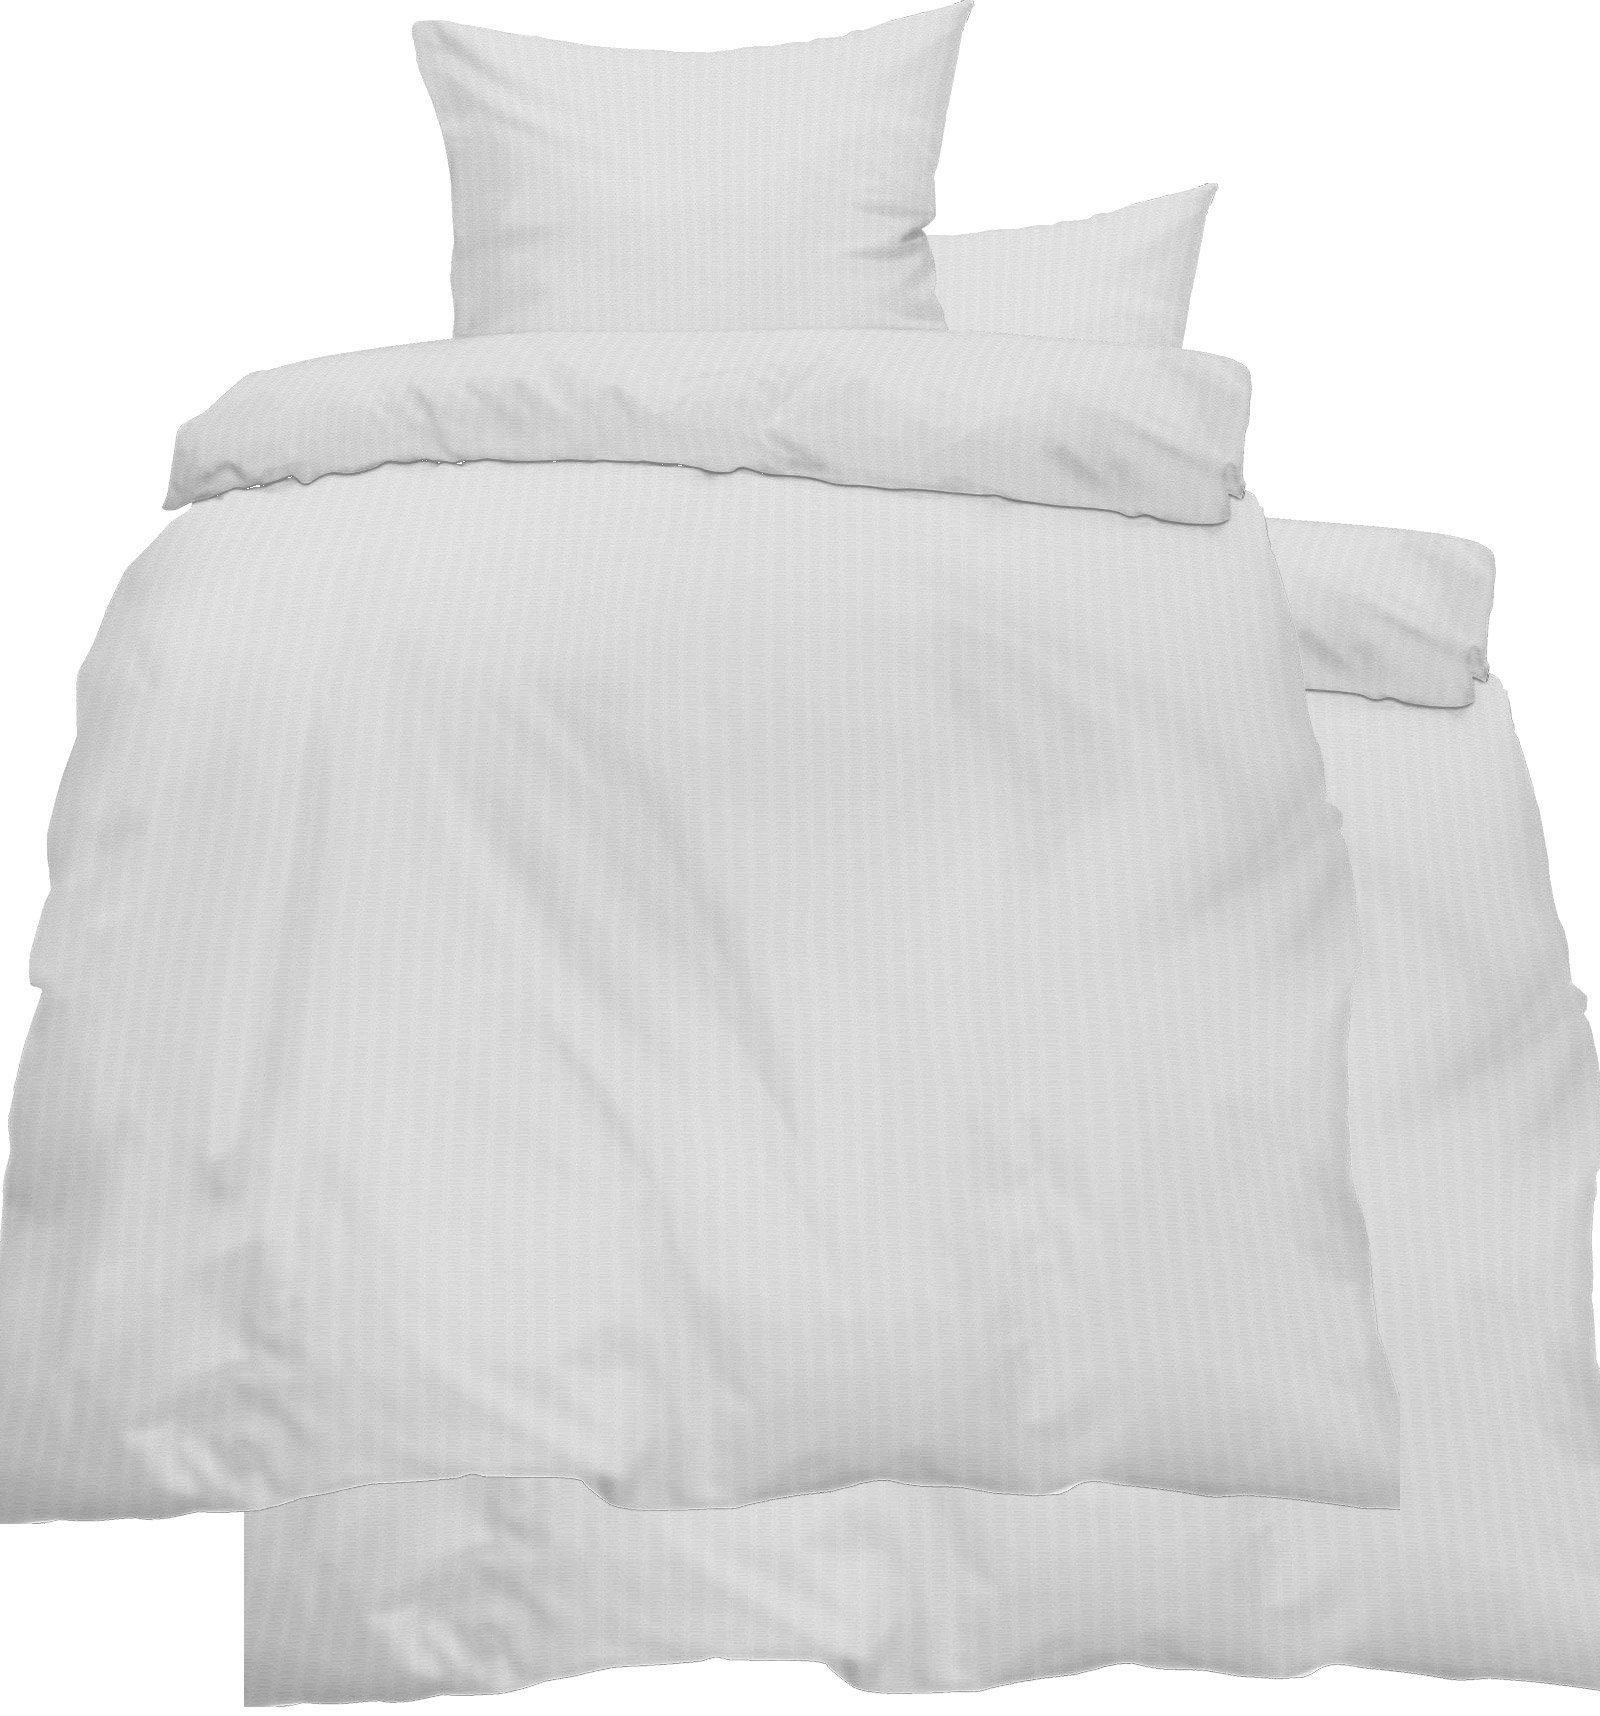 Bettwäsche 4-tlg. Seersucker Bettwäsche 2x 135x200 + 2x 80x80 cm, weiß, KH-Haushaltshandel, Seersucker, 4 teilig, uni/einfarbig, Reißverschluß, bügelfrei